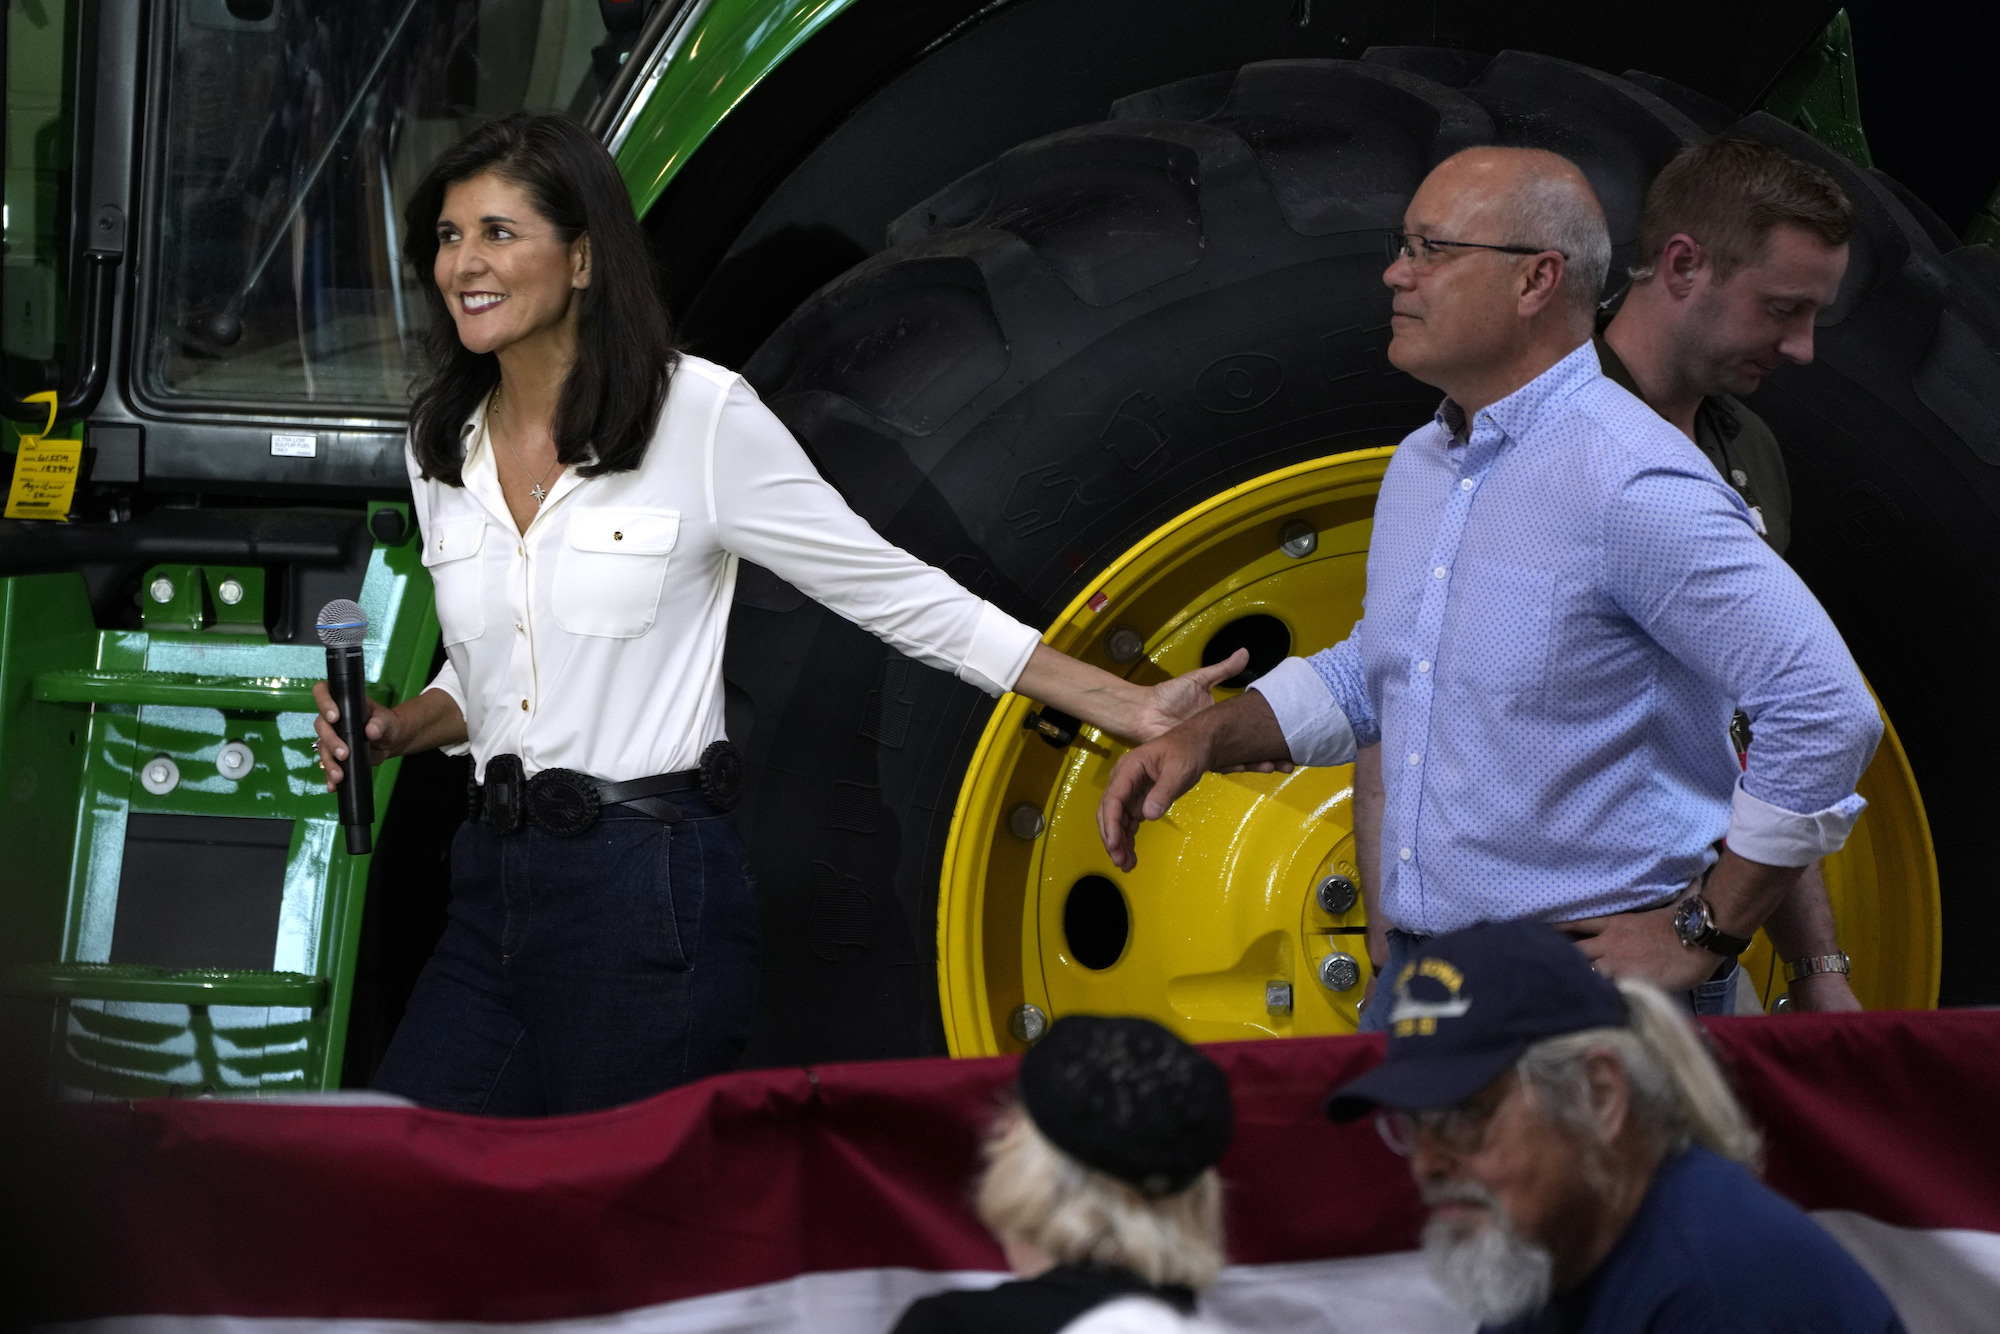 Cựu Đại sứ Liên Hiệp Quốc, hiện là ứng cử viên tổng thống của Đảng Cộng Hòa, bà Nikki Haley bước lên sân khấu cùng chồng là ông Michael, tại một sự kiện ở Des Moines, tiểu bang Iowa, hôm 03/06/ 2023. (Ảnh: Charlie Neibergall/AP Photo)